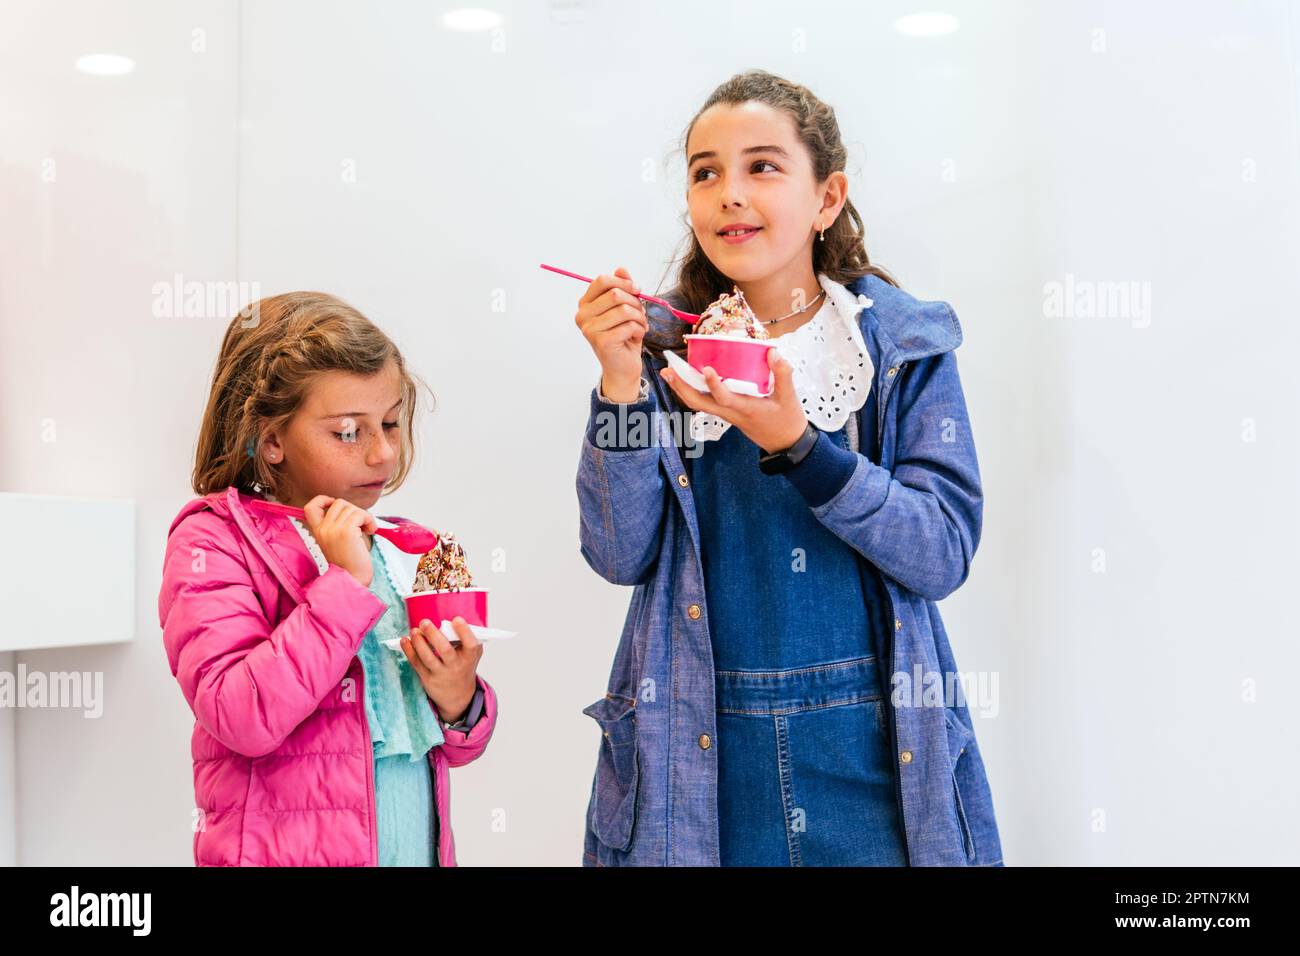 deux petites filles qui mangent de la crème glacée Banque D'Images